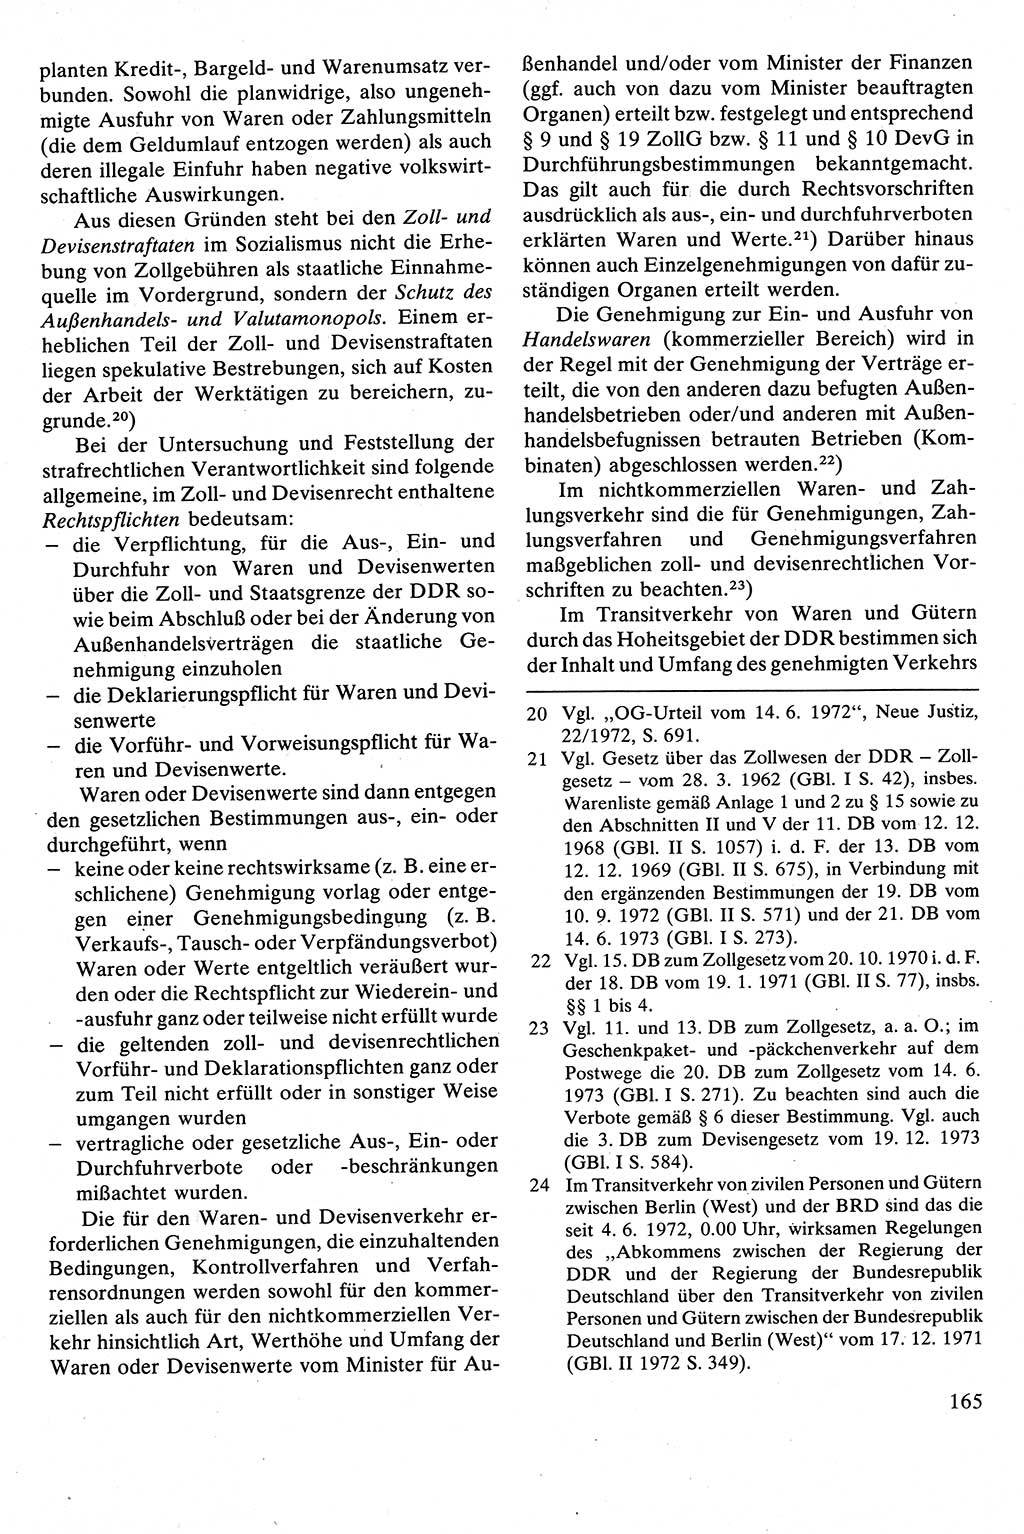 Strafrecht [Deutsche Demokratische Republik (DDR)], Besonderer Teil, Lehrbuch 1981, Seite 165 (Strafr. DDR BT Lb. 1981, S. 165)